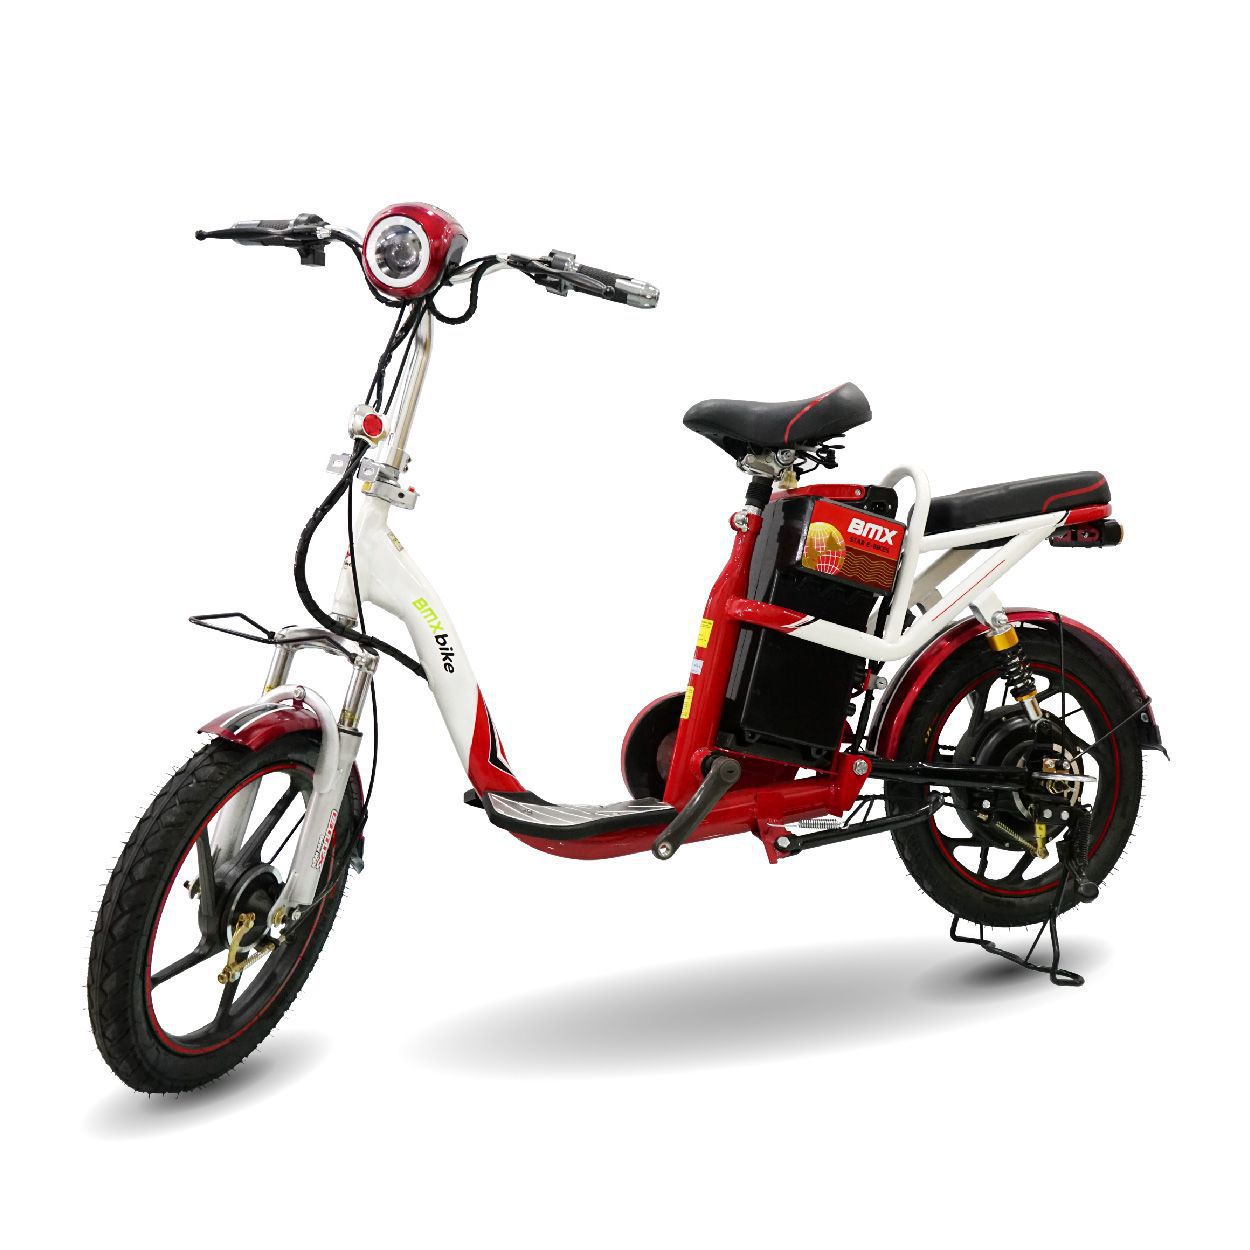 BMX azi star e bikes chitiet 01 01 1 - Bảng giá xe đạp điện giá rẻ cập nhật liên tục 2020 - 2021